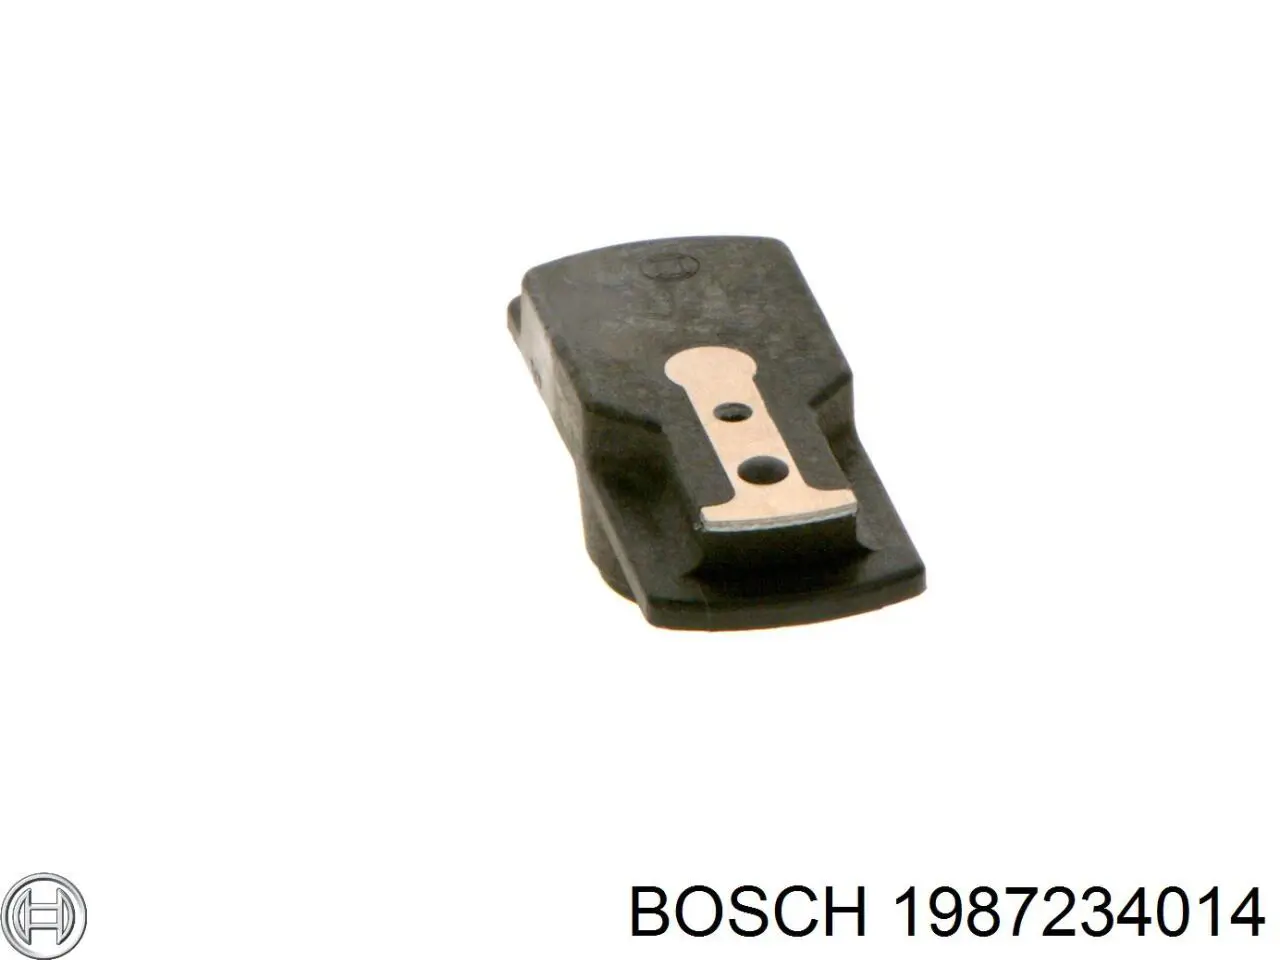 1987234014 Bosch rotor del distribuidor de encendido